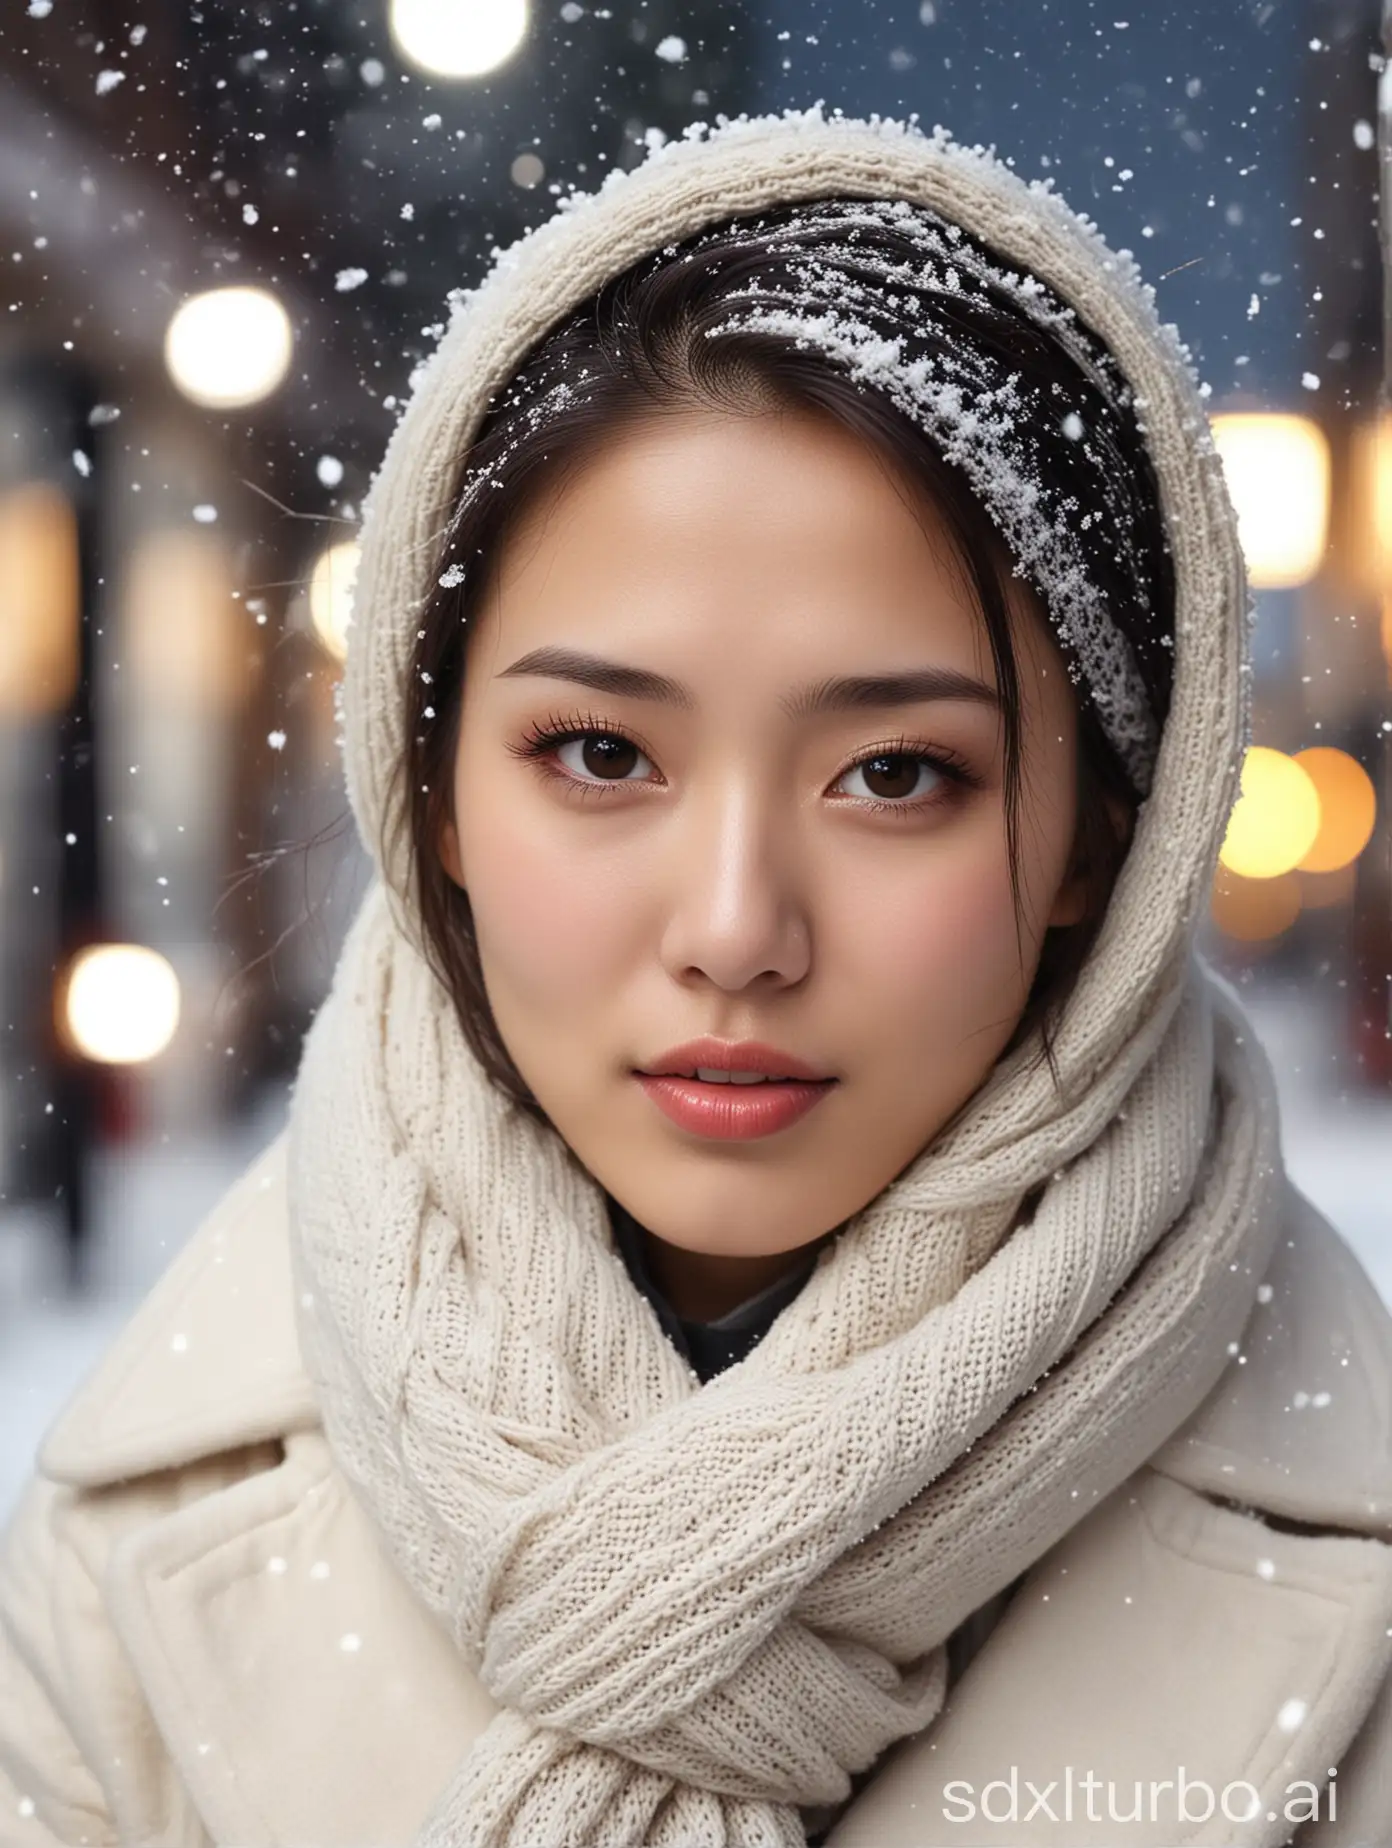 Beautiful-Woman-in-White-Coat-on-Snowy-Street